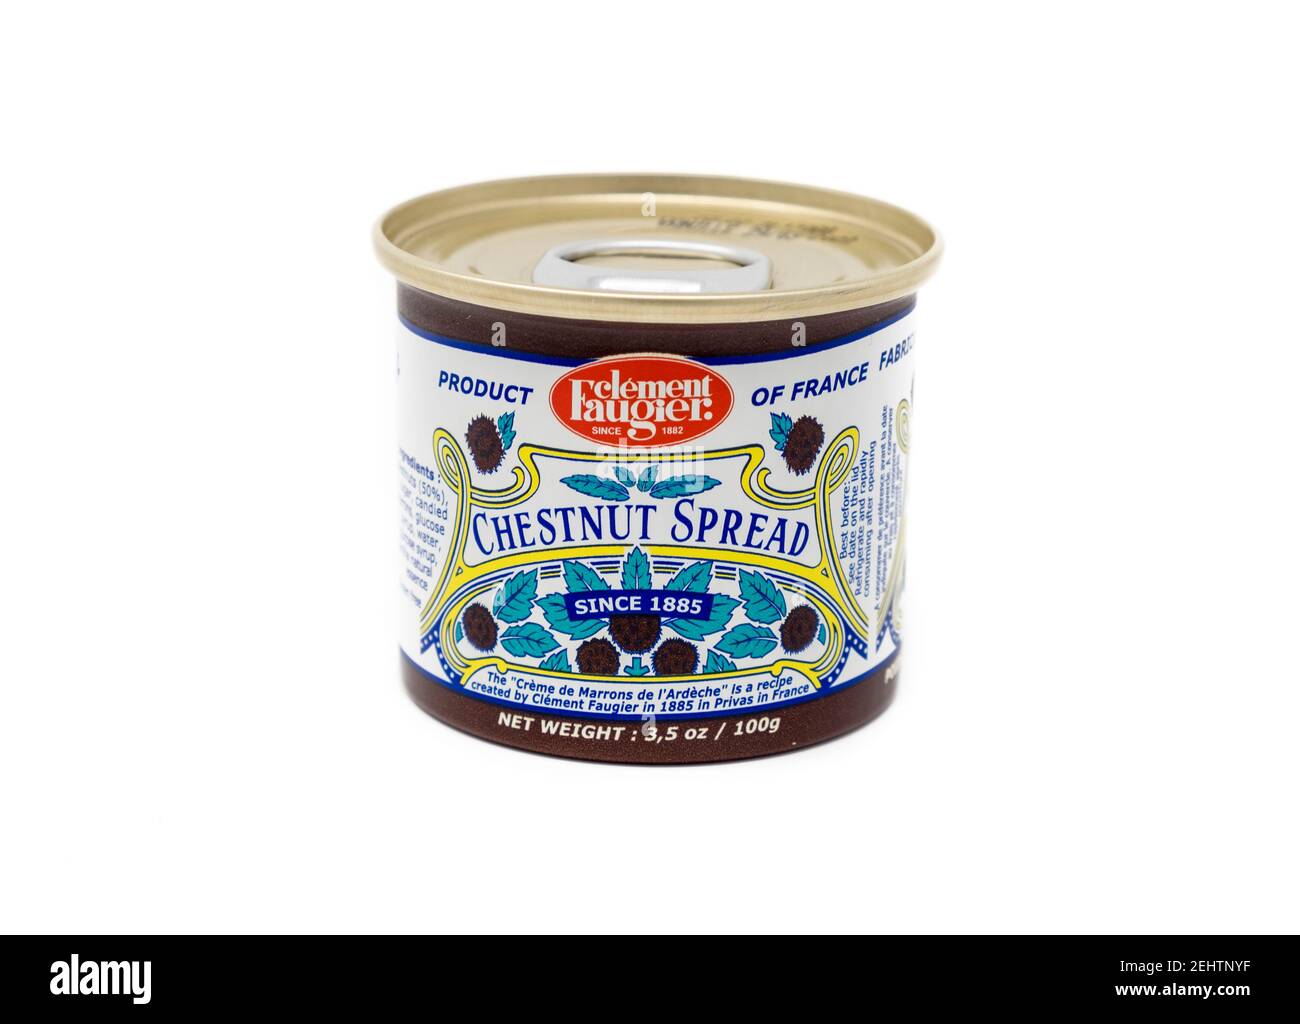 Clement Faugier, Creme de Marron de l'Ardeche, chestnut spread, French canned food Stock Photo